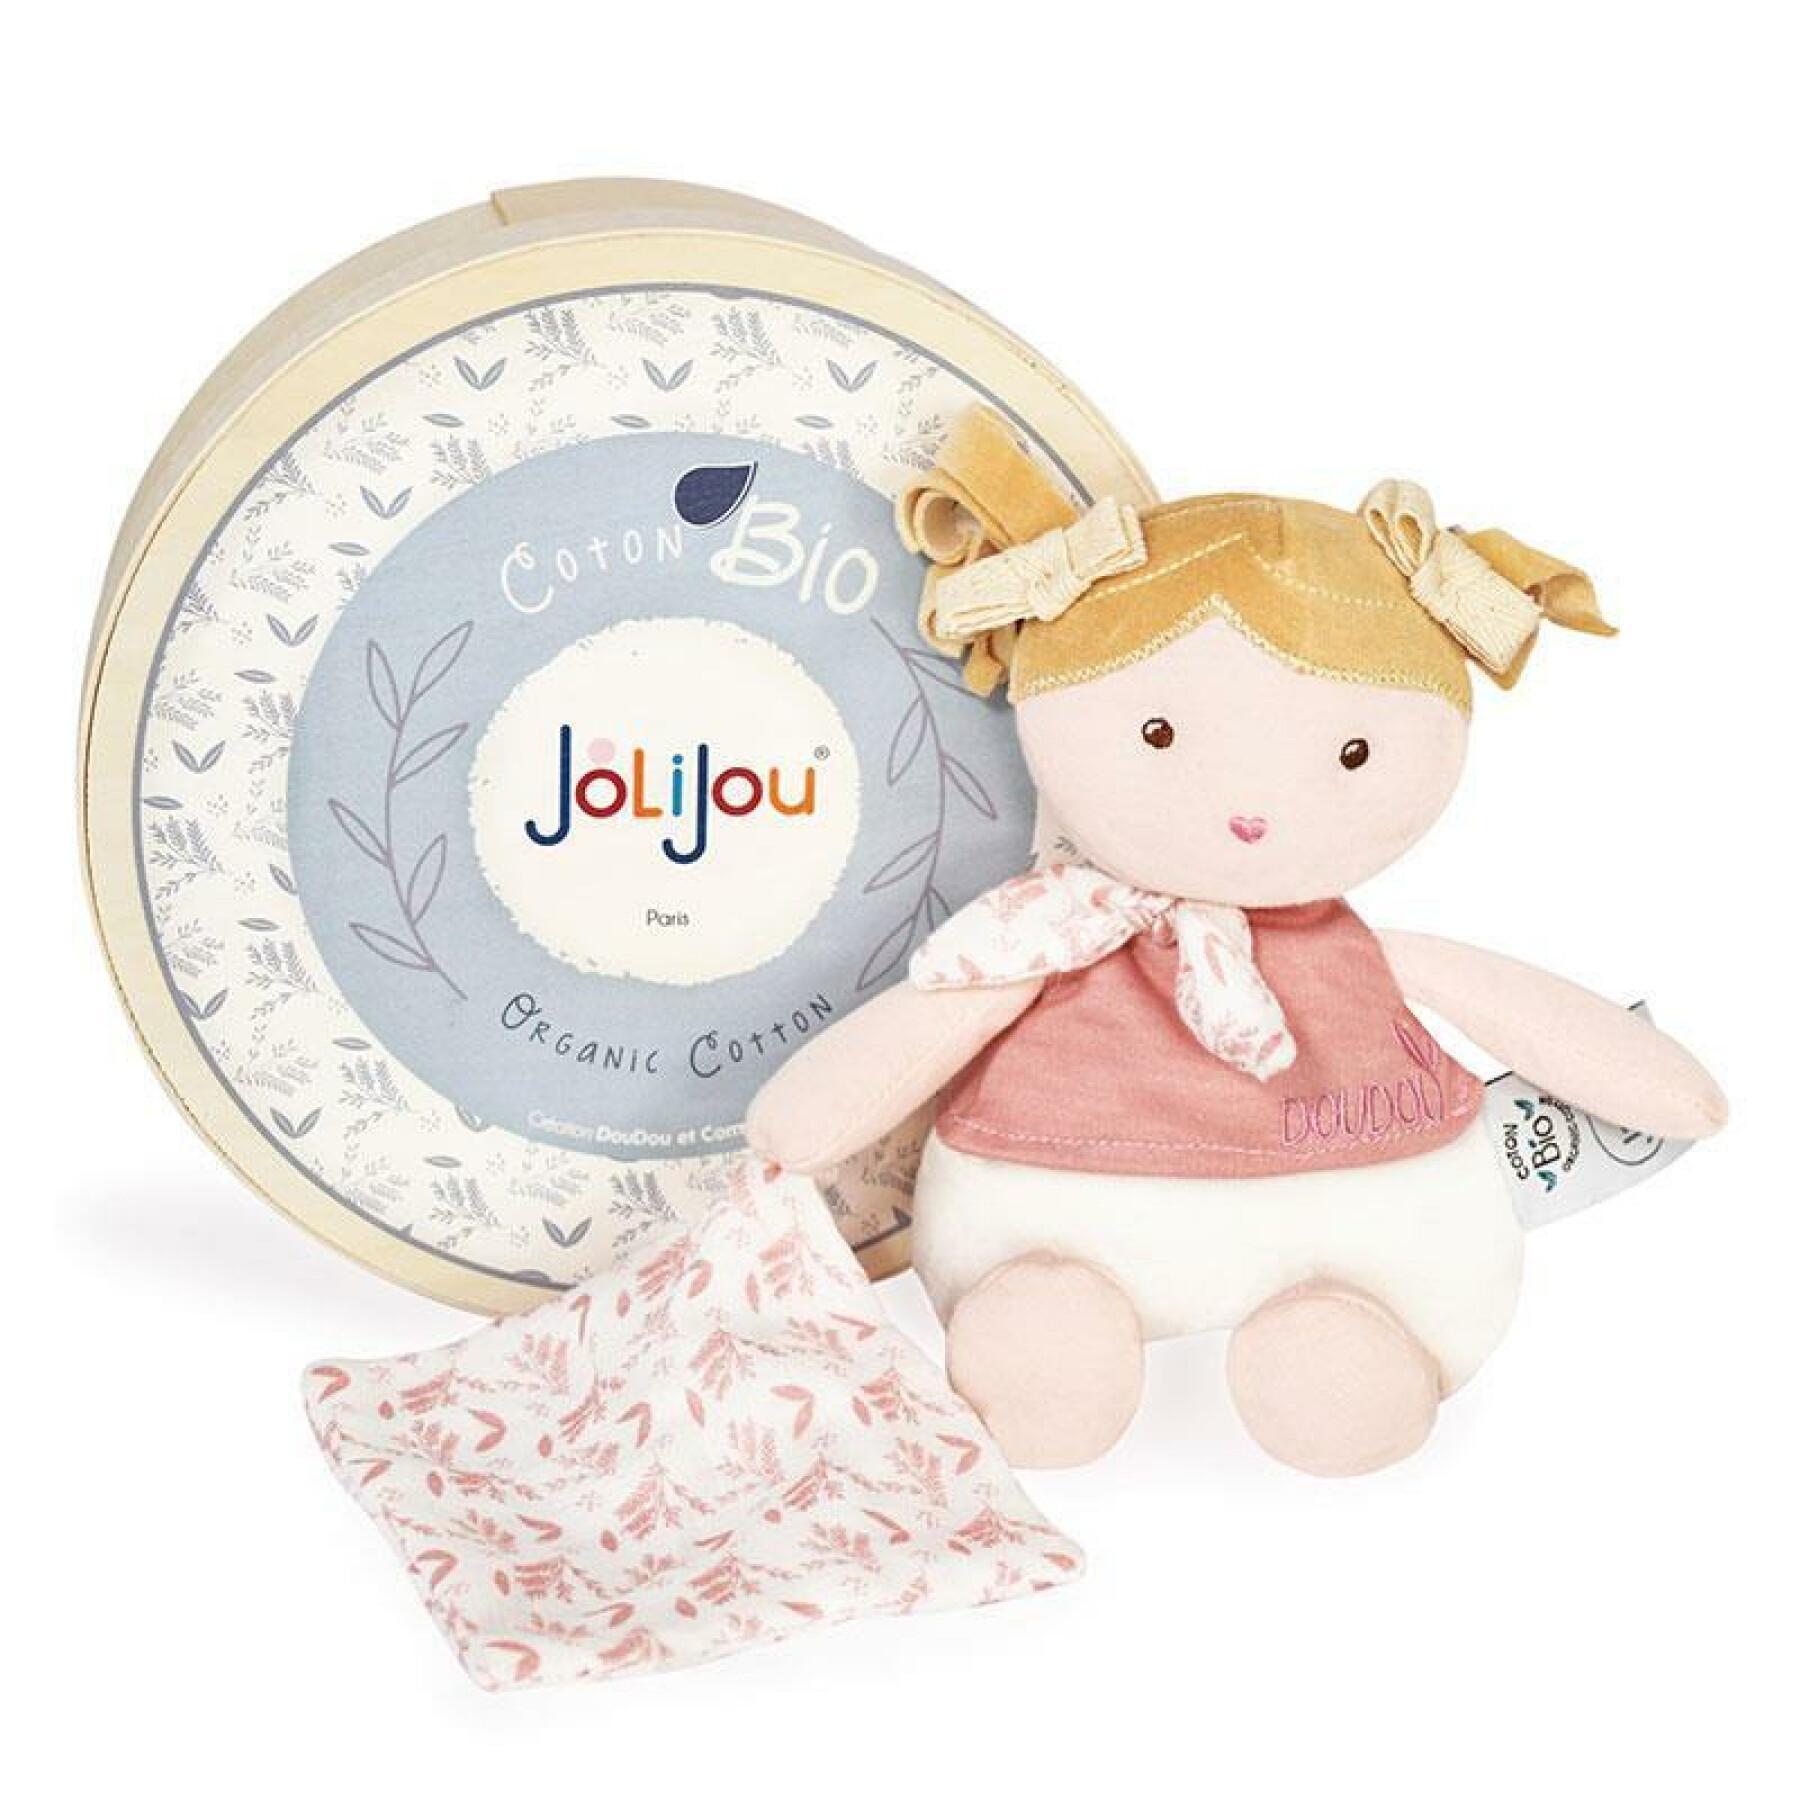 Doll Doudou & compagnie Les Joliflores